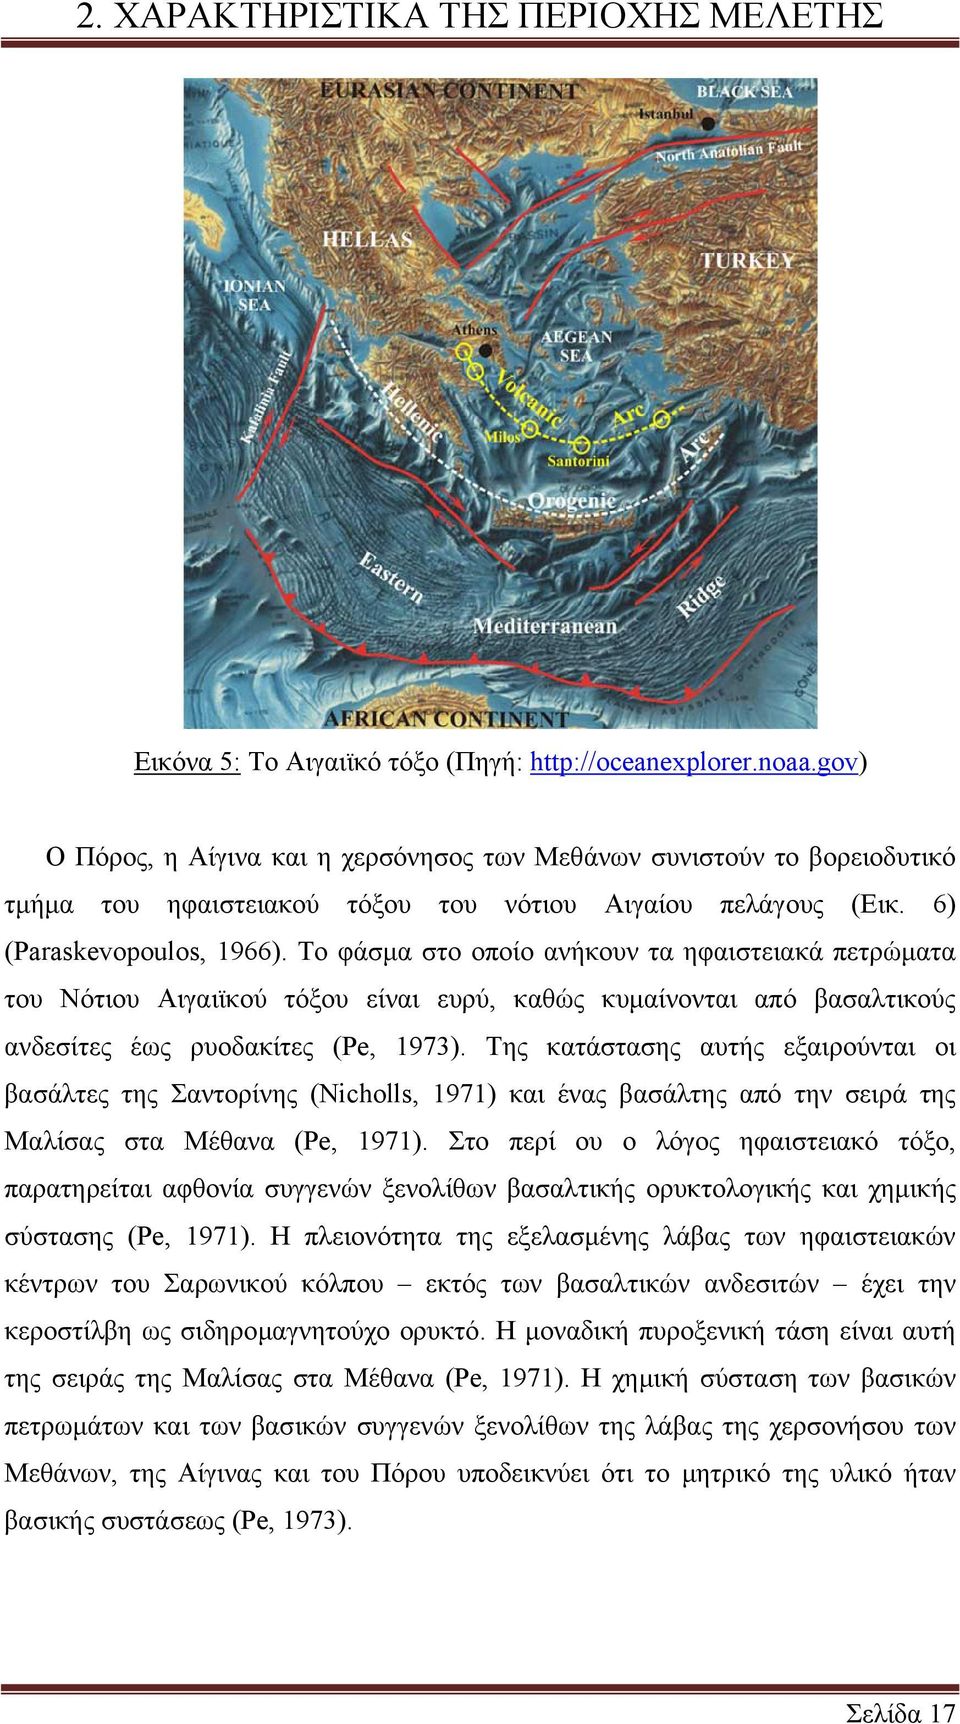 Το φάσµα στο οποίο ανήκουν τα ηφαιστειακά πετρώµατα του Νότιου Αιγαιϊκού τόξου είναι ευρύ, καθώς κυµαίνονται από βασαλτικούς ανδεσίτες έως ρυοδακίτες (Pe, 1973).